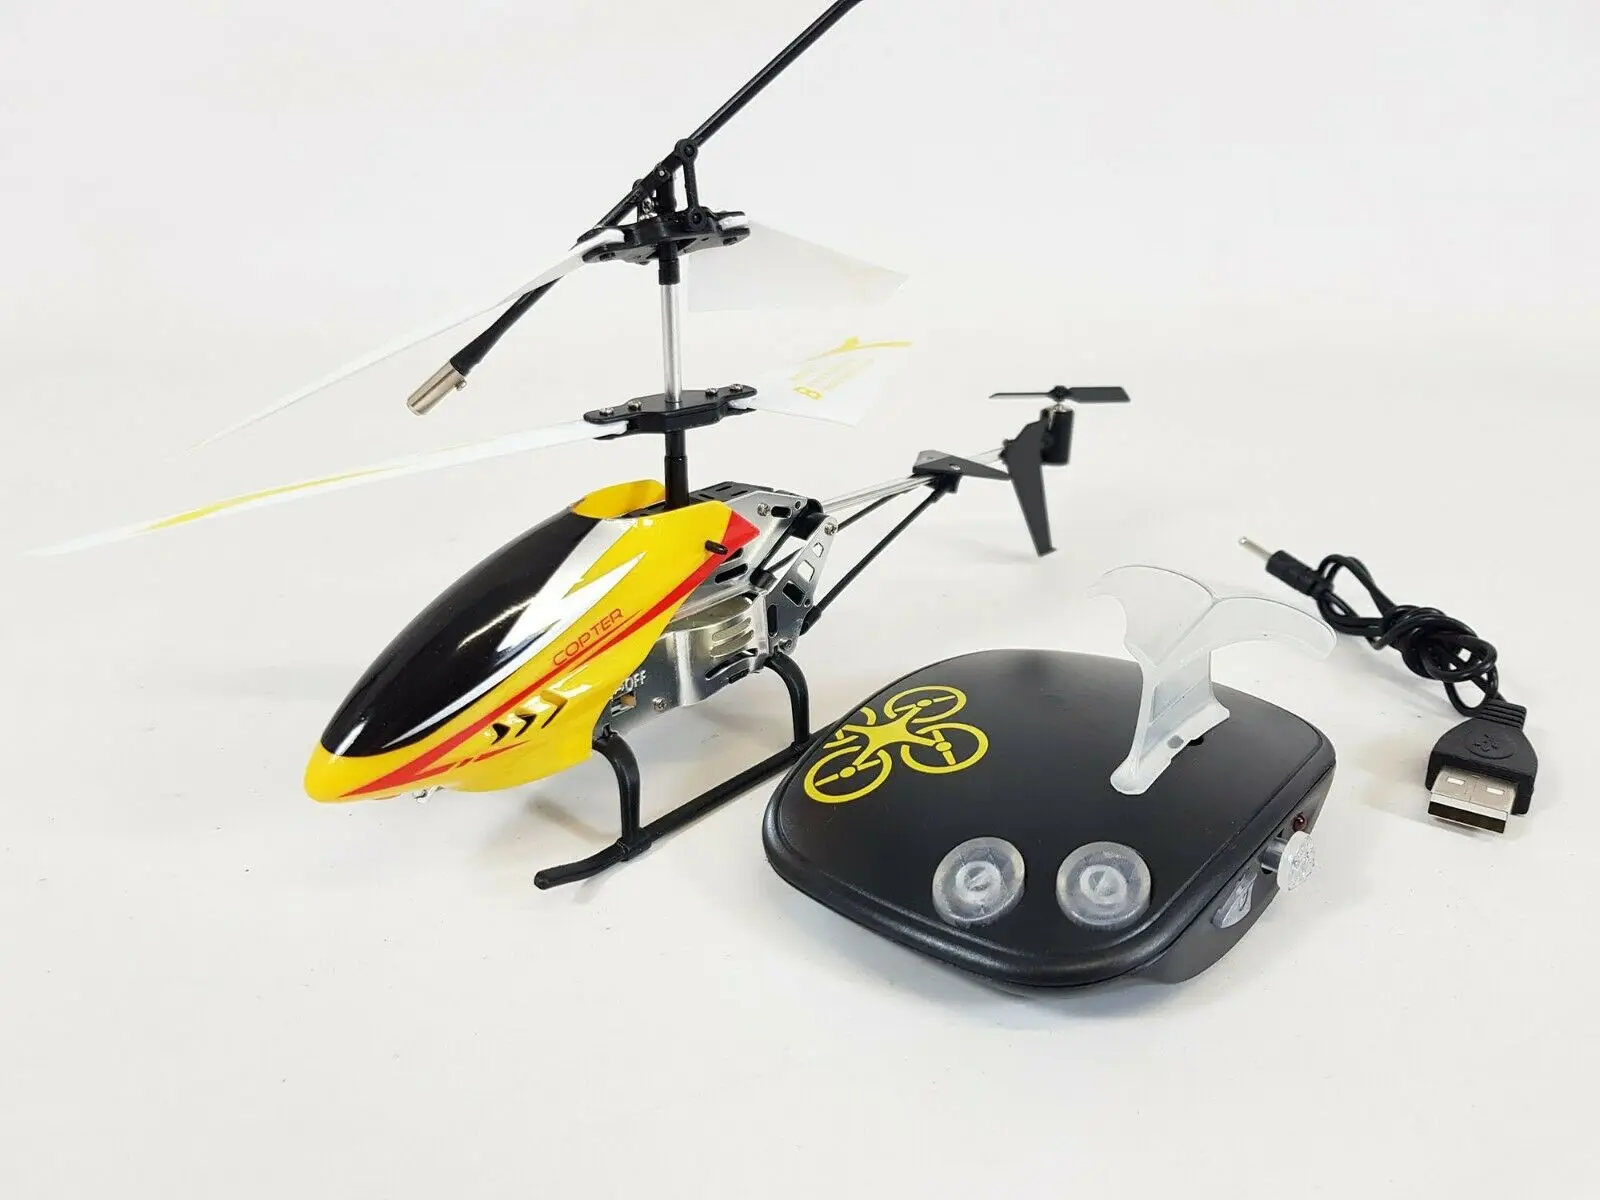 

Радиоуправляемый вертолет с дистанционным управлением жестами 2,4g, Дрон с гироскопом, стабильная модель UK